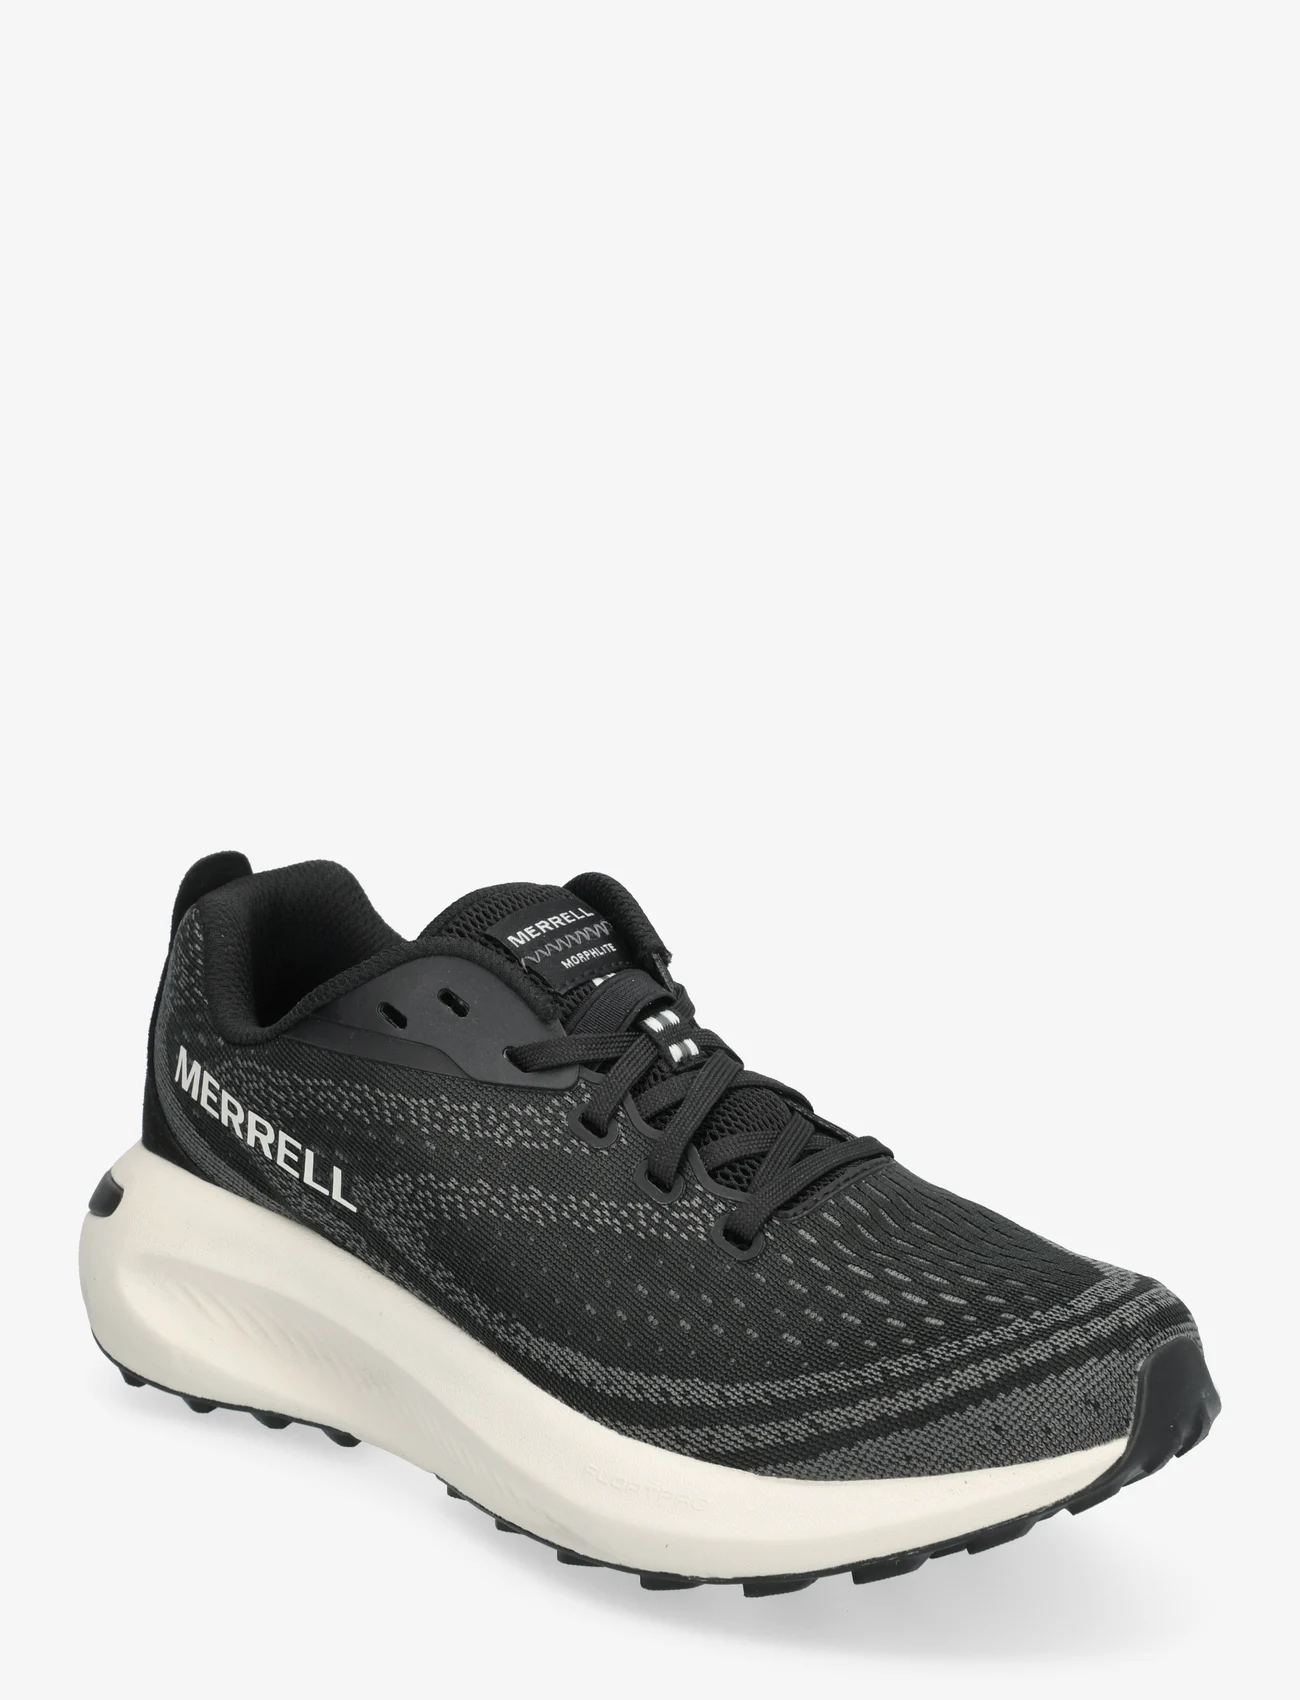 Merrell - Women's Morphlite - Black/White - running shoes - black/white - 0